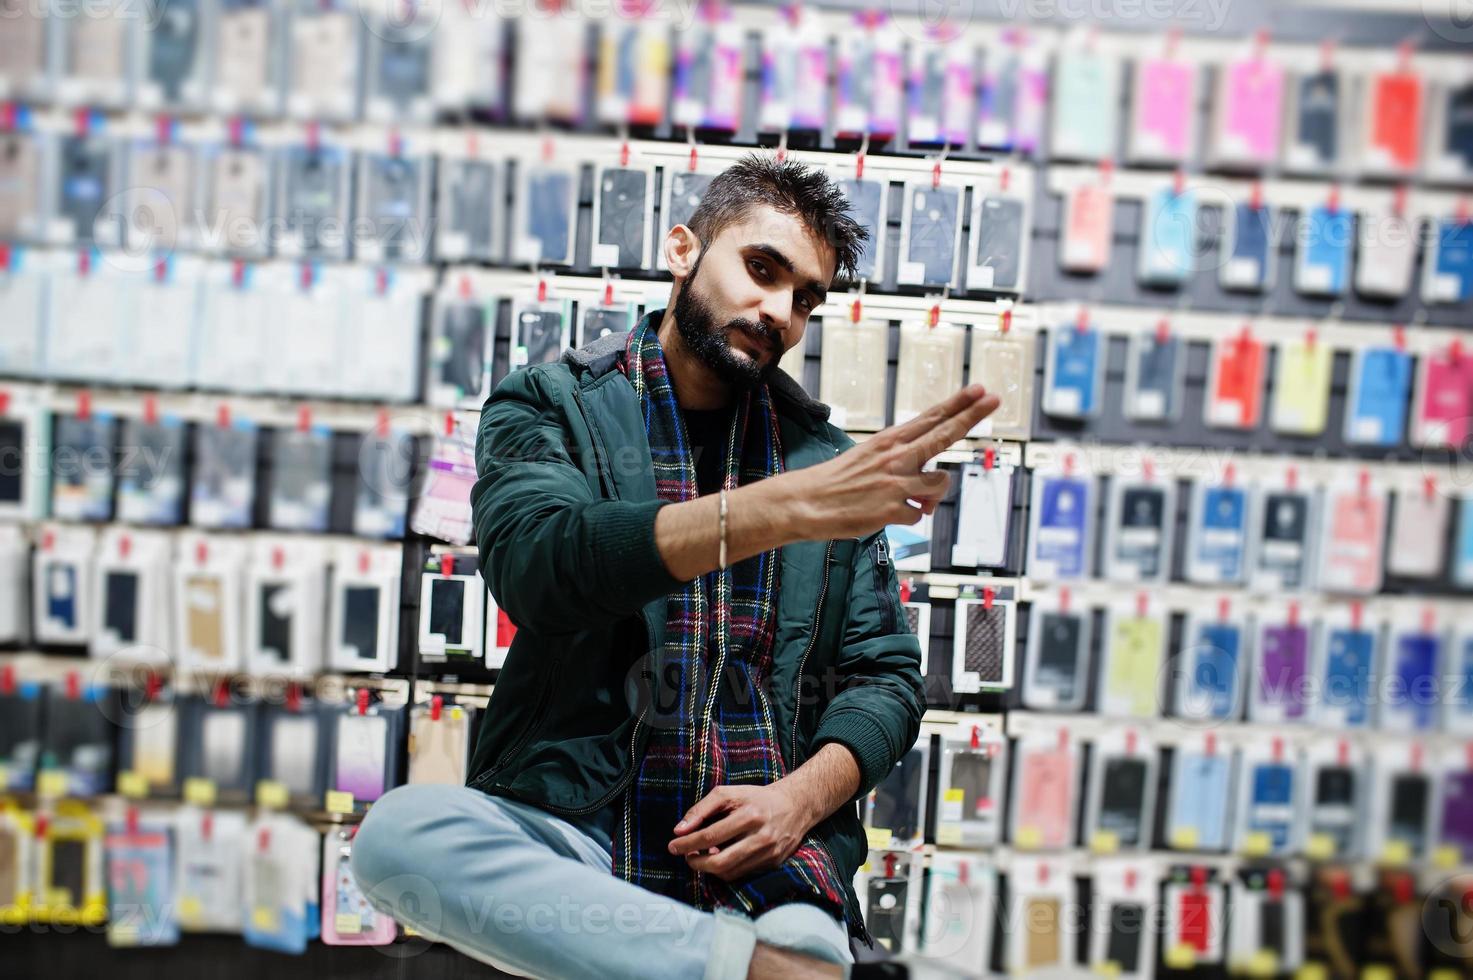 Comprador de cliente de barba india con chaqueta en la tienda de teléfonos móviles. concepto de pueblos y tecnologías del sur de Asia. tienda de celulares foto